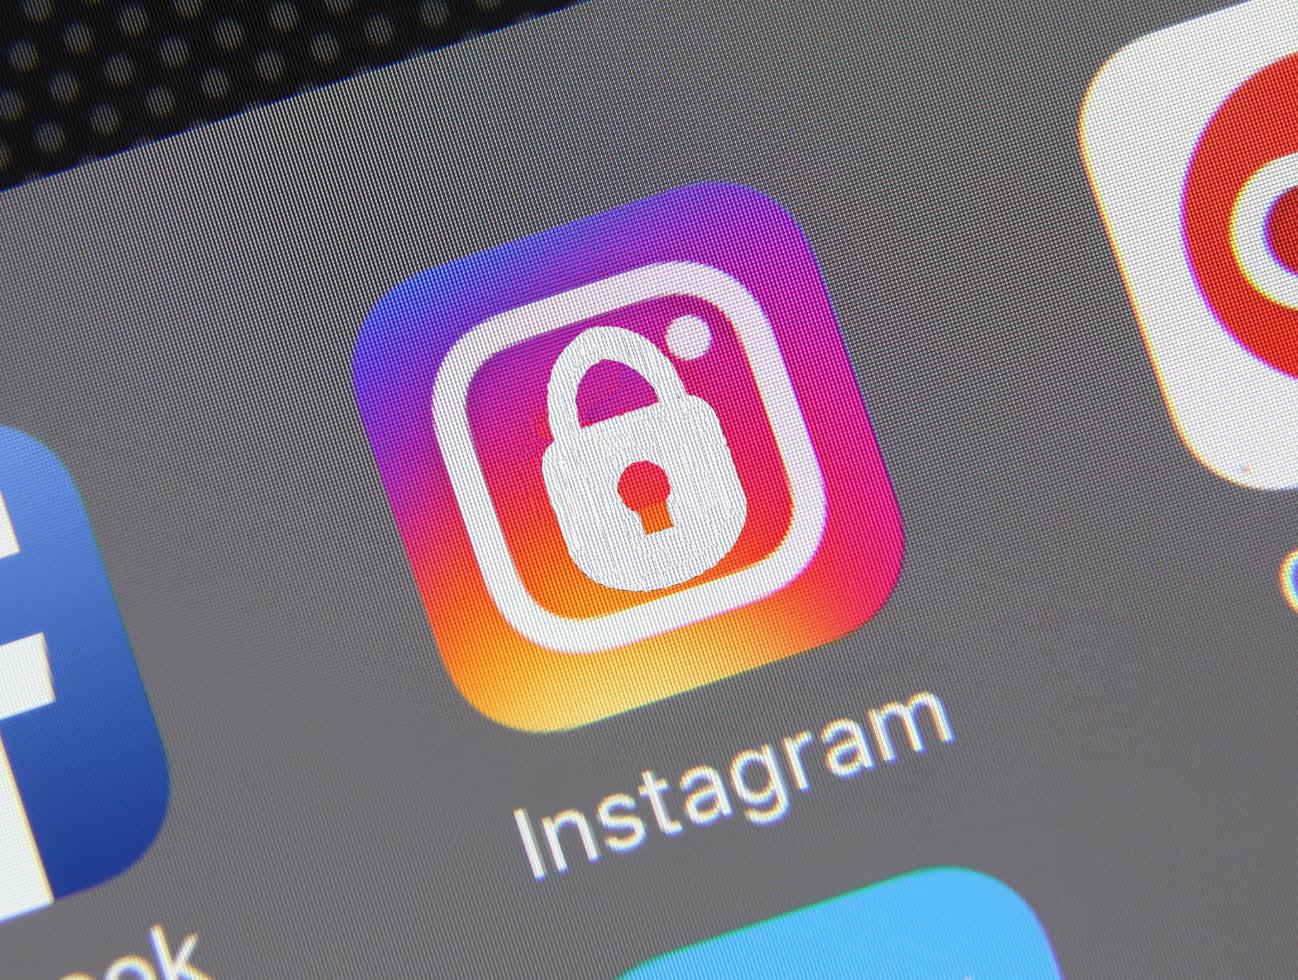 instagram hack account no survey 2016